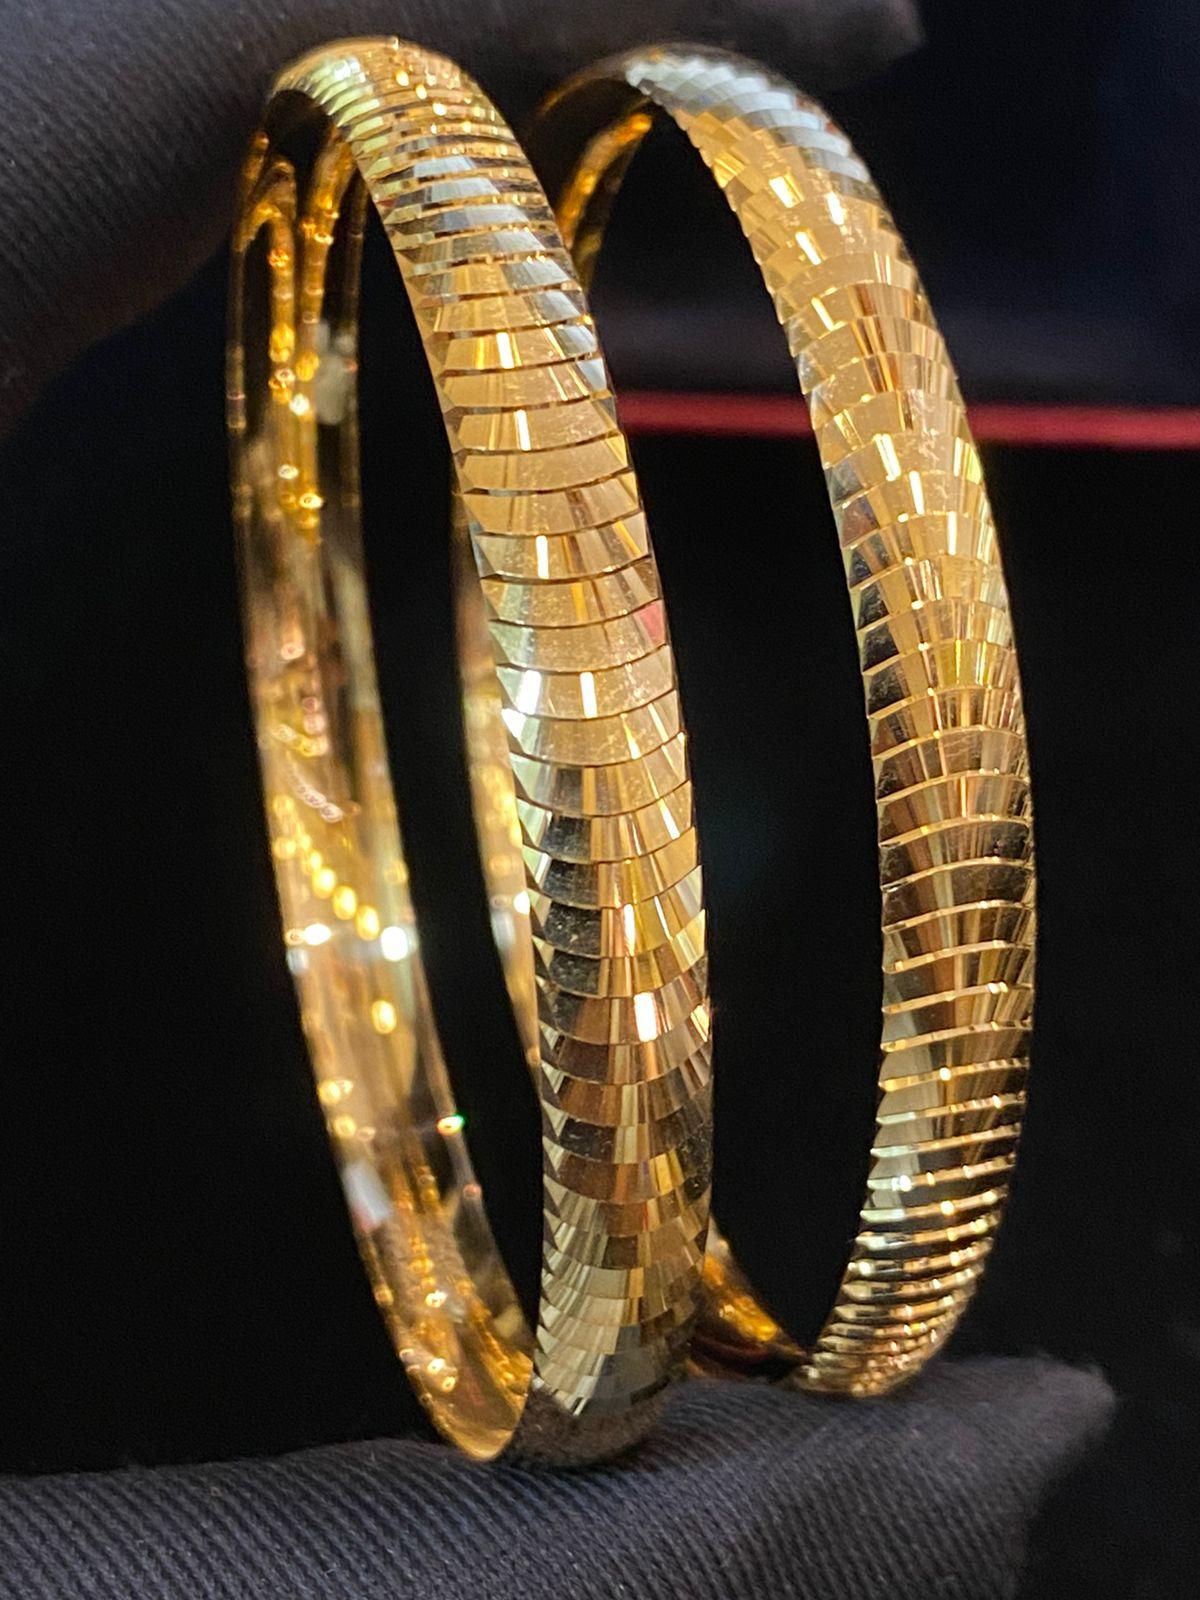 22k gold bracelet price in ksa